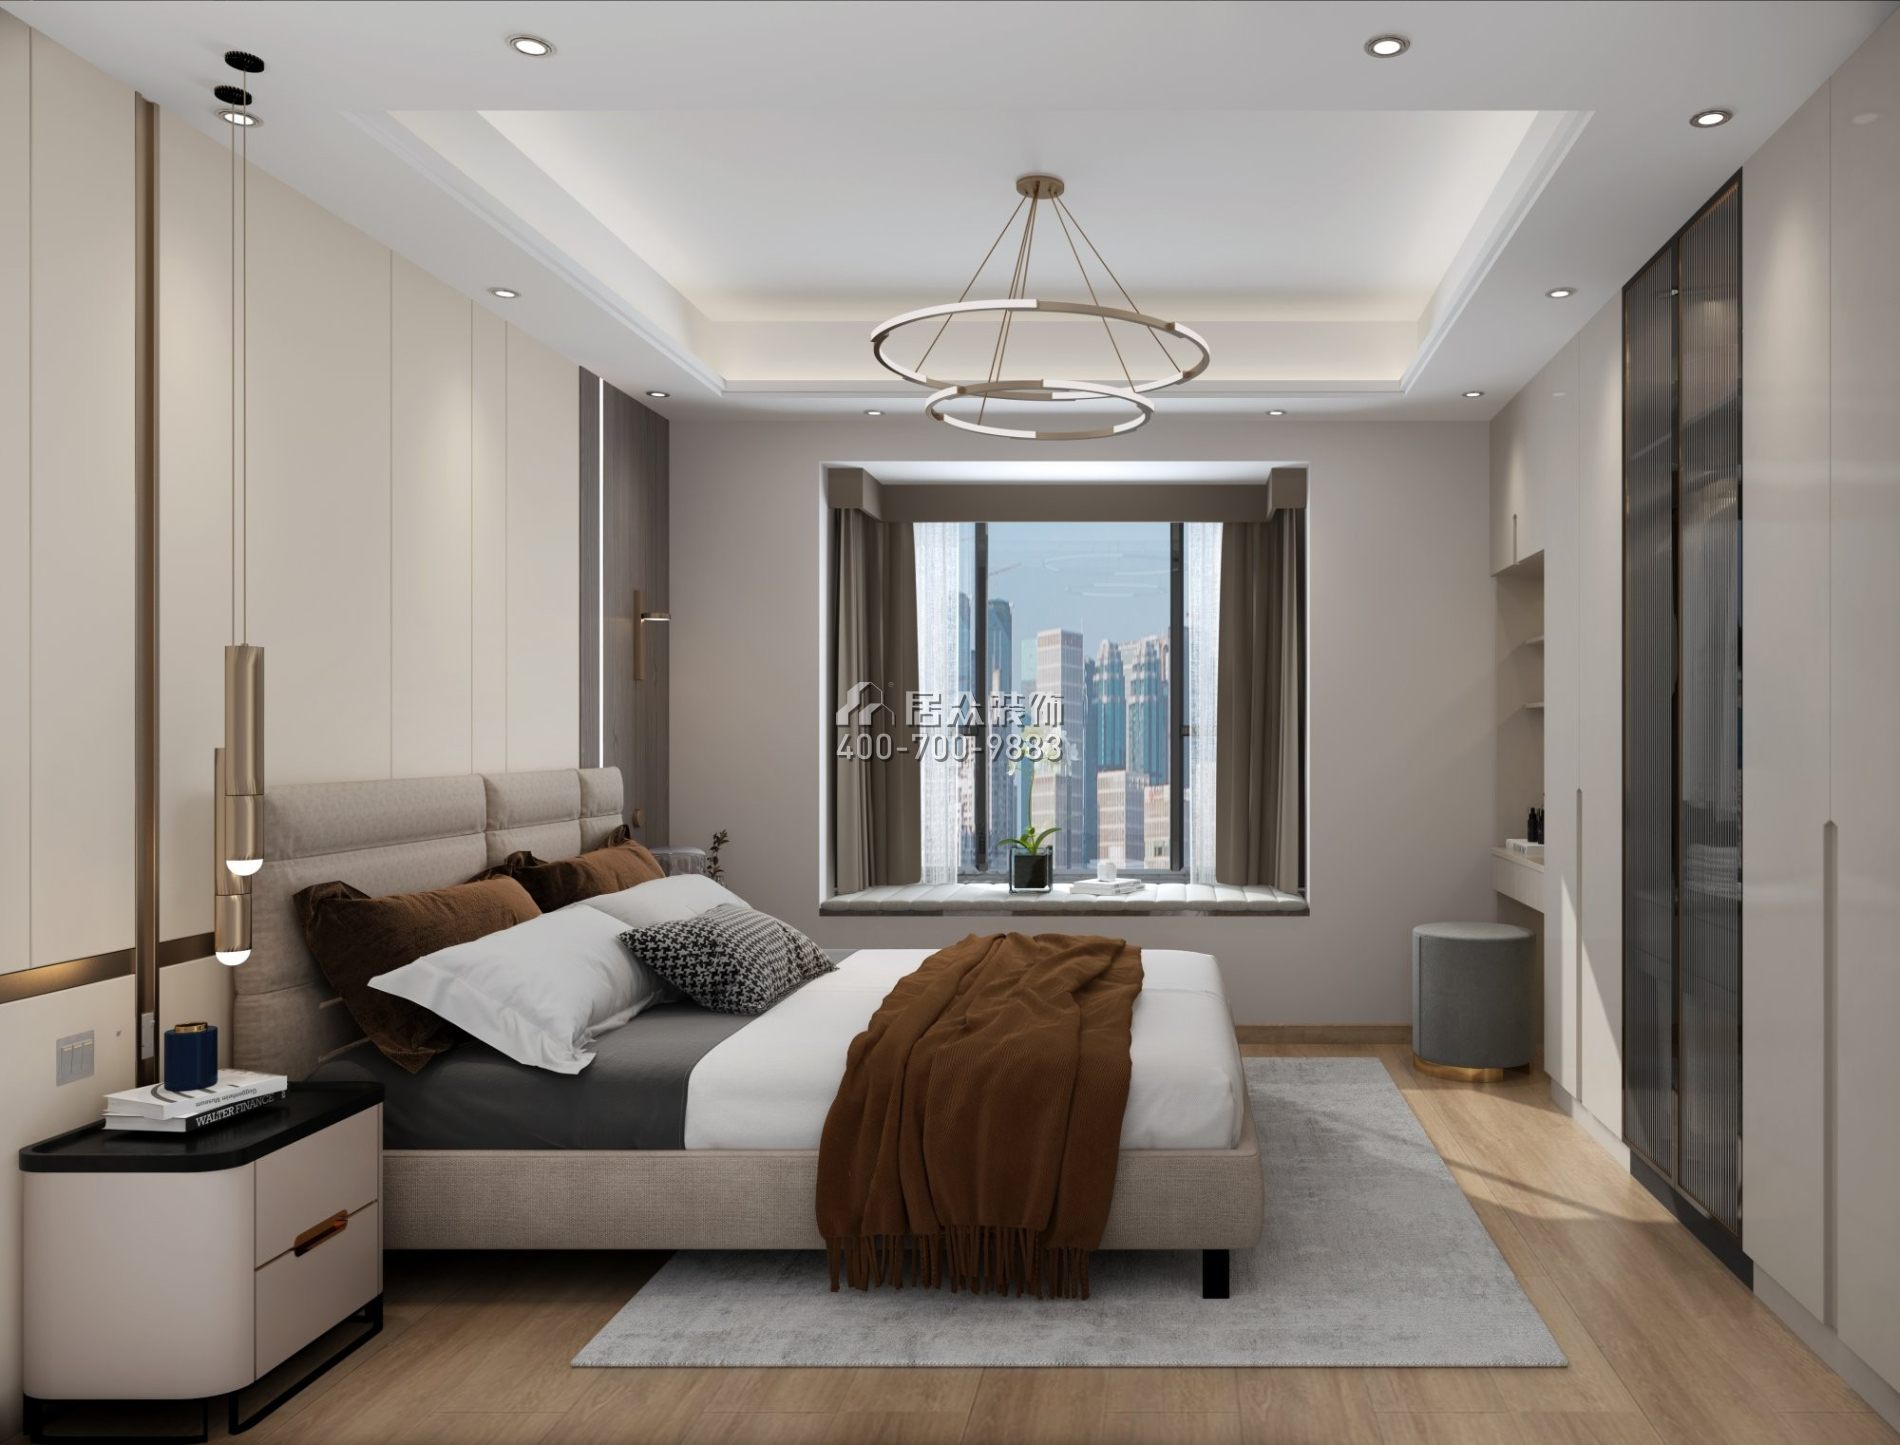 丽晶国际121平方米现代简约风格平层户型卧室装修效果图